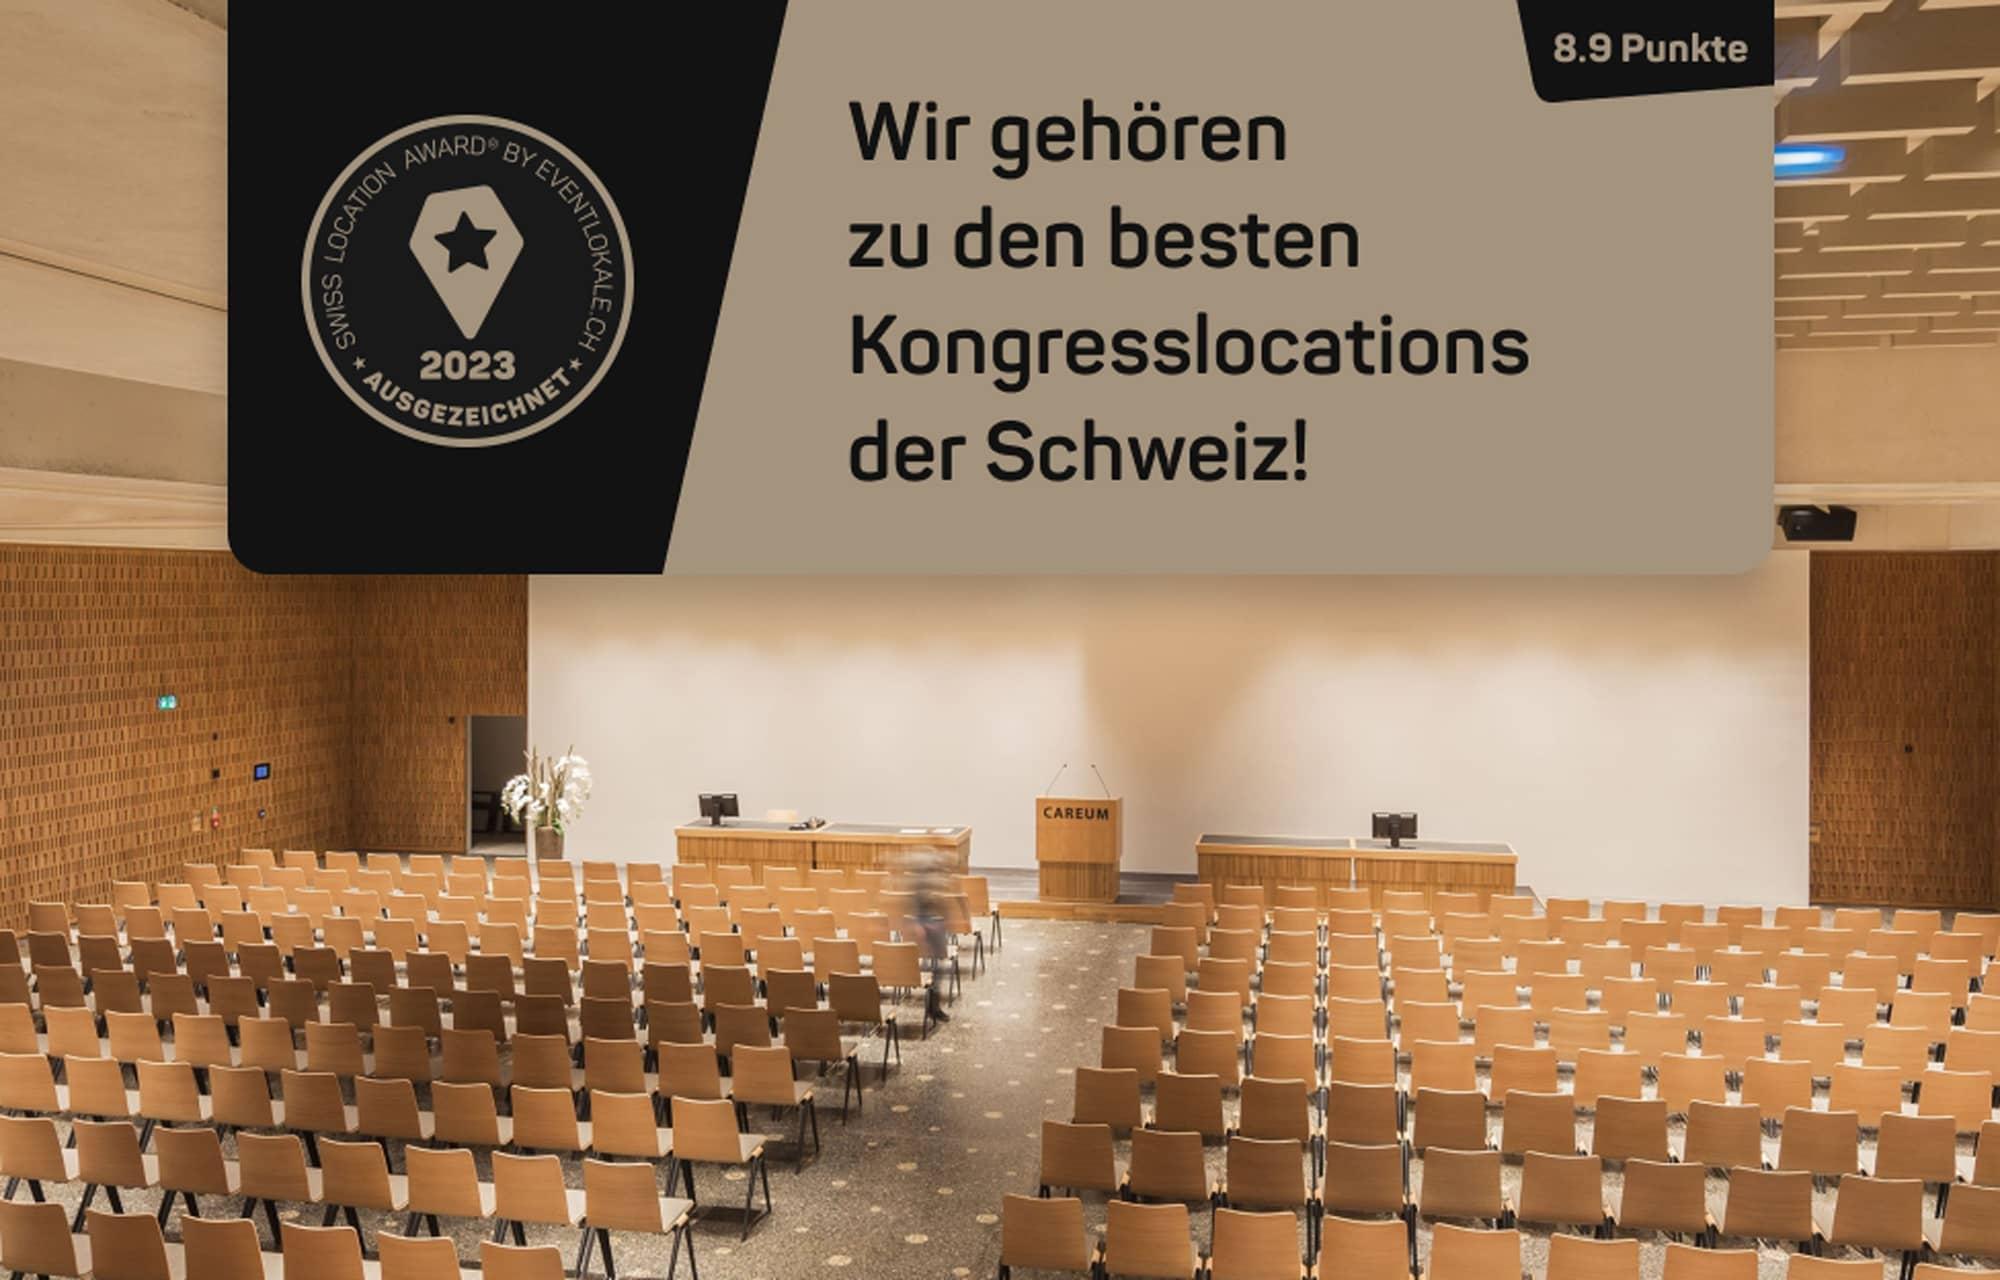 Das Careum Auditorium gehört zu den besten Kongresslocations der Schweiz.